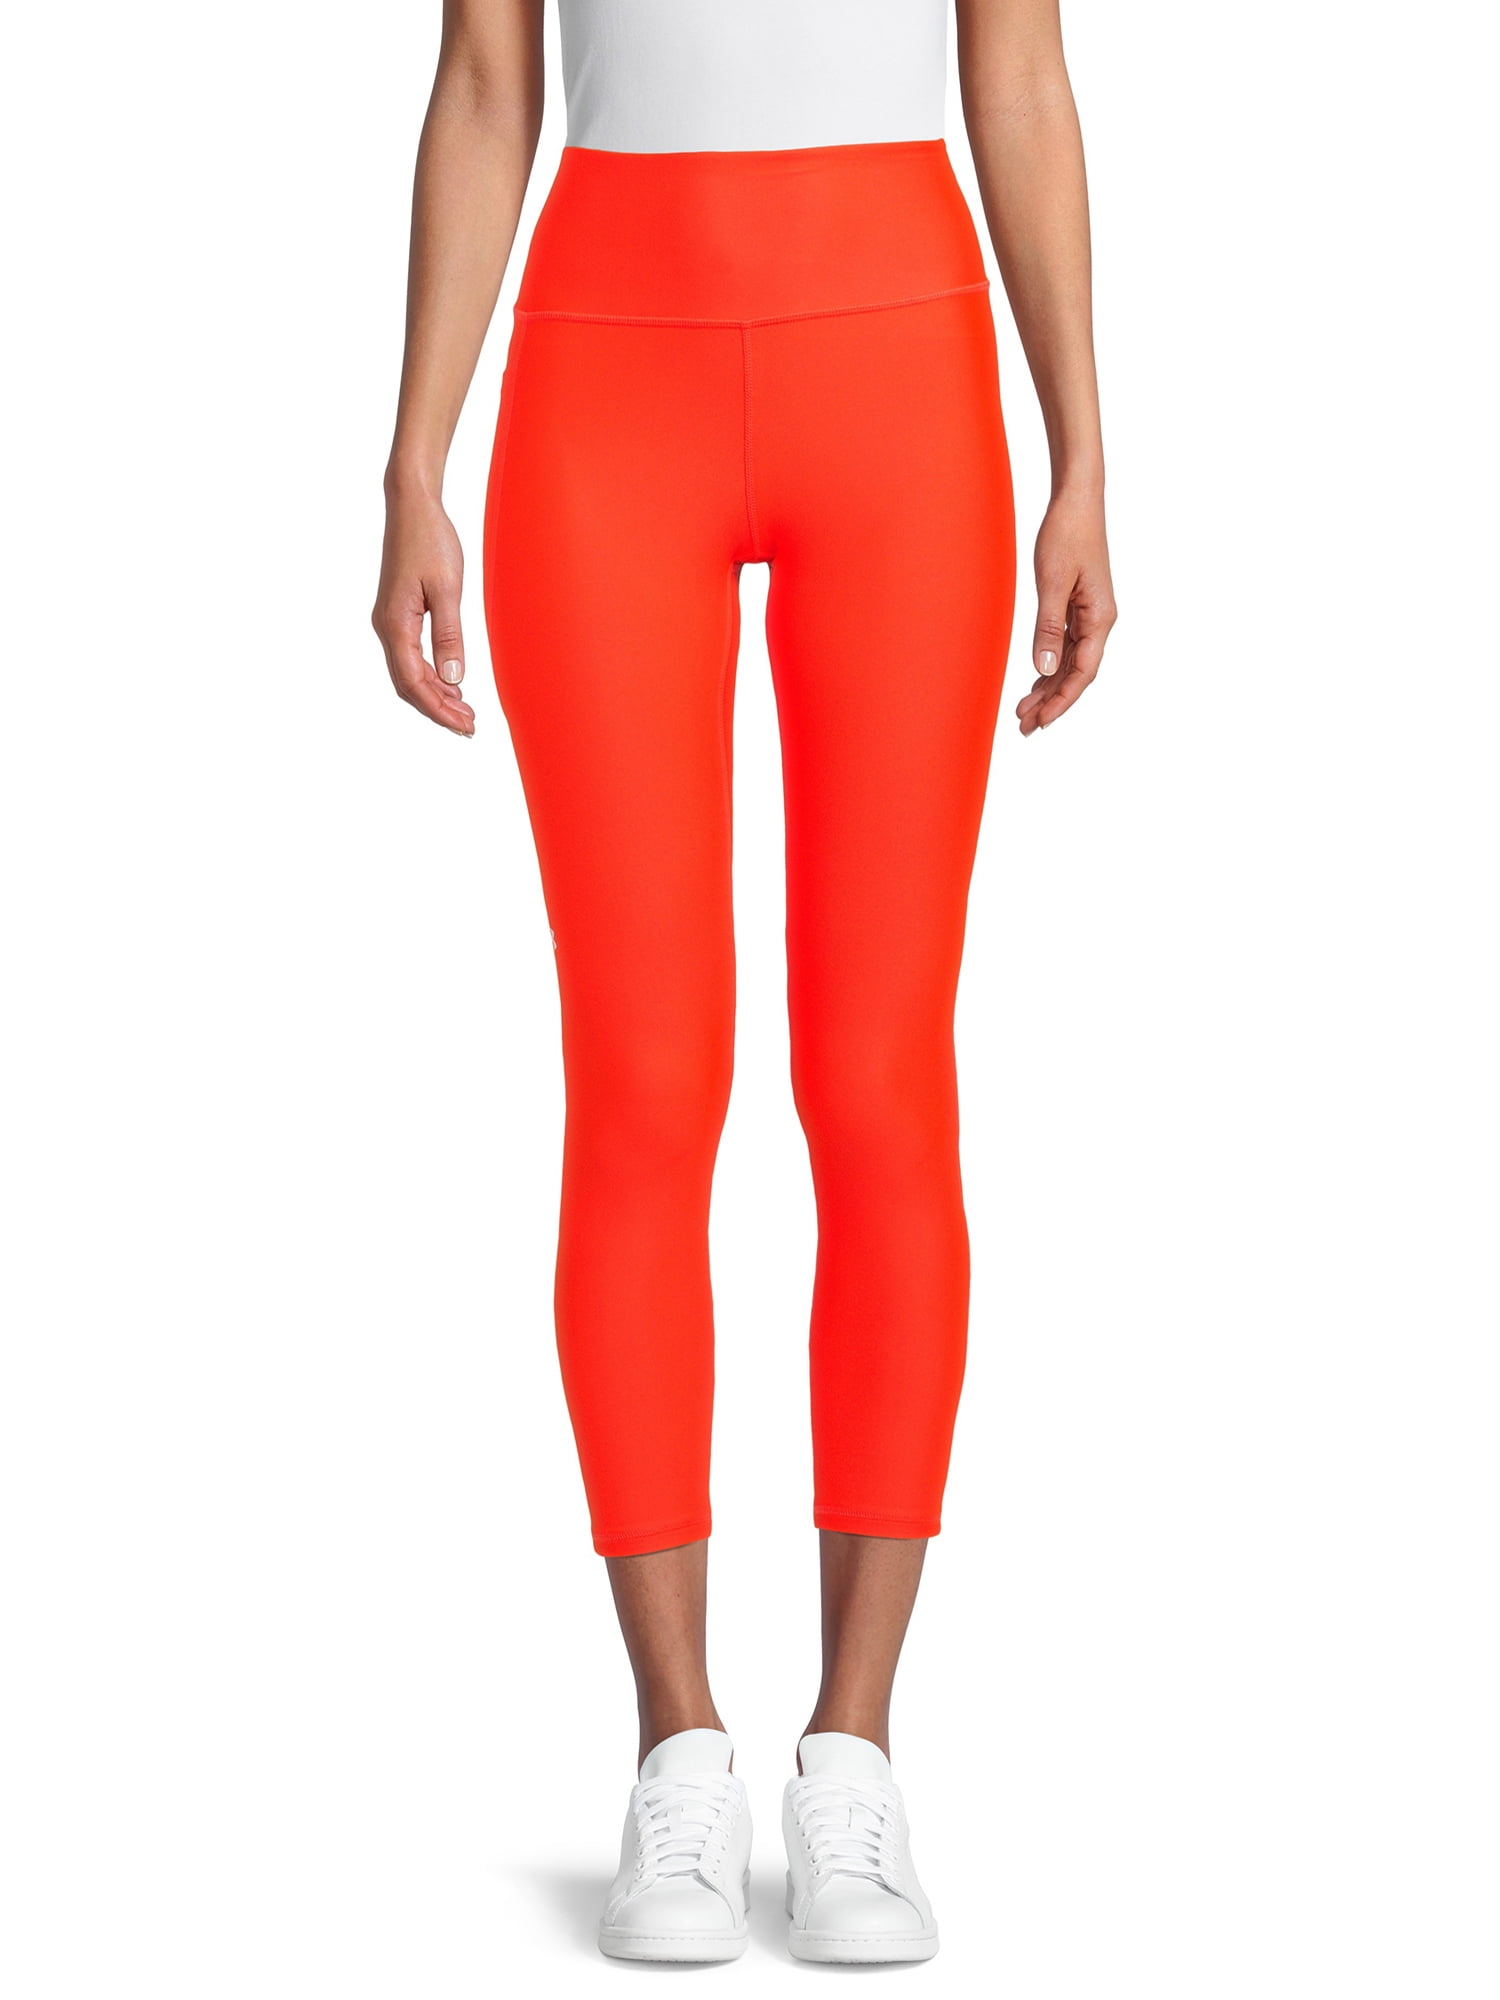 Women's Under Armor Leggings Size M Lava Orange All Seasons Gear